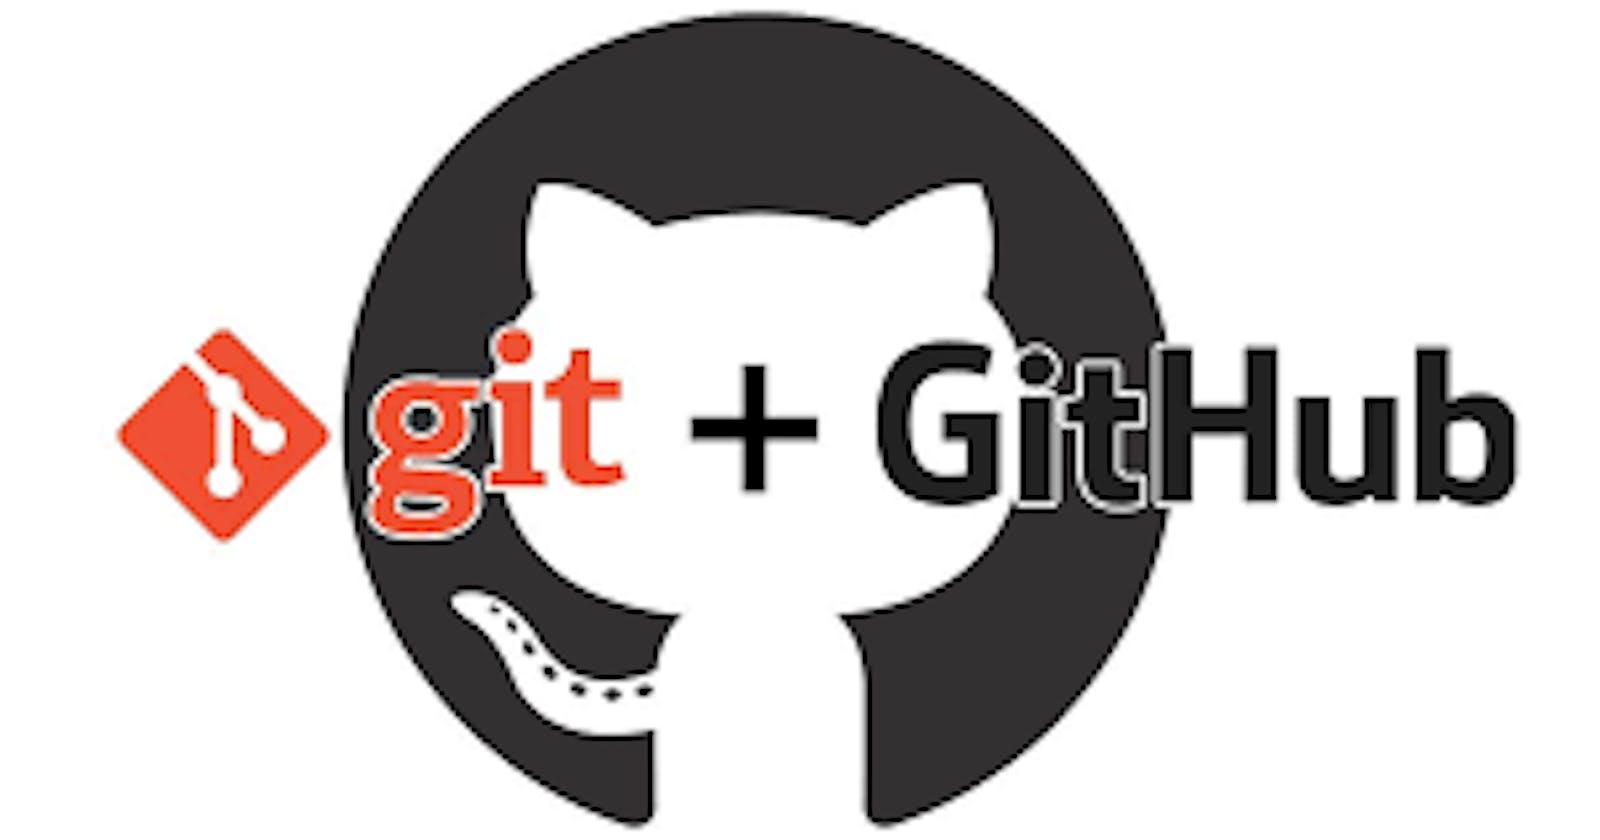 Git and GitHub 101